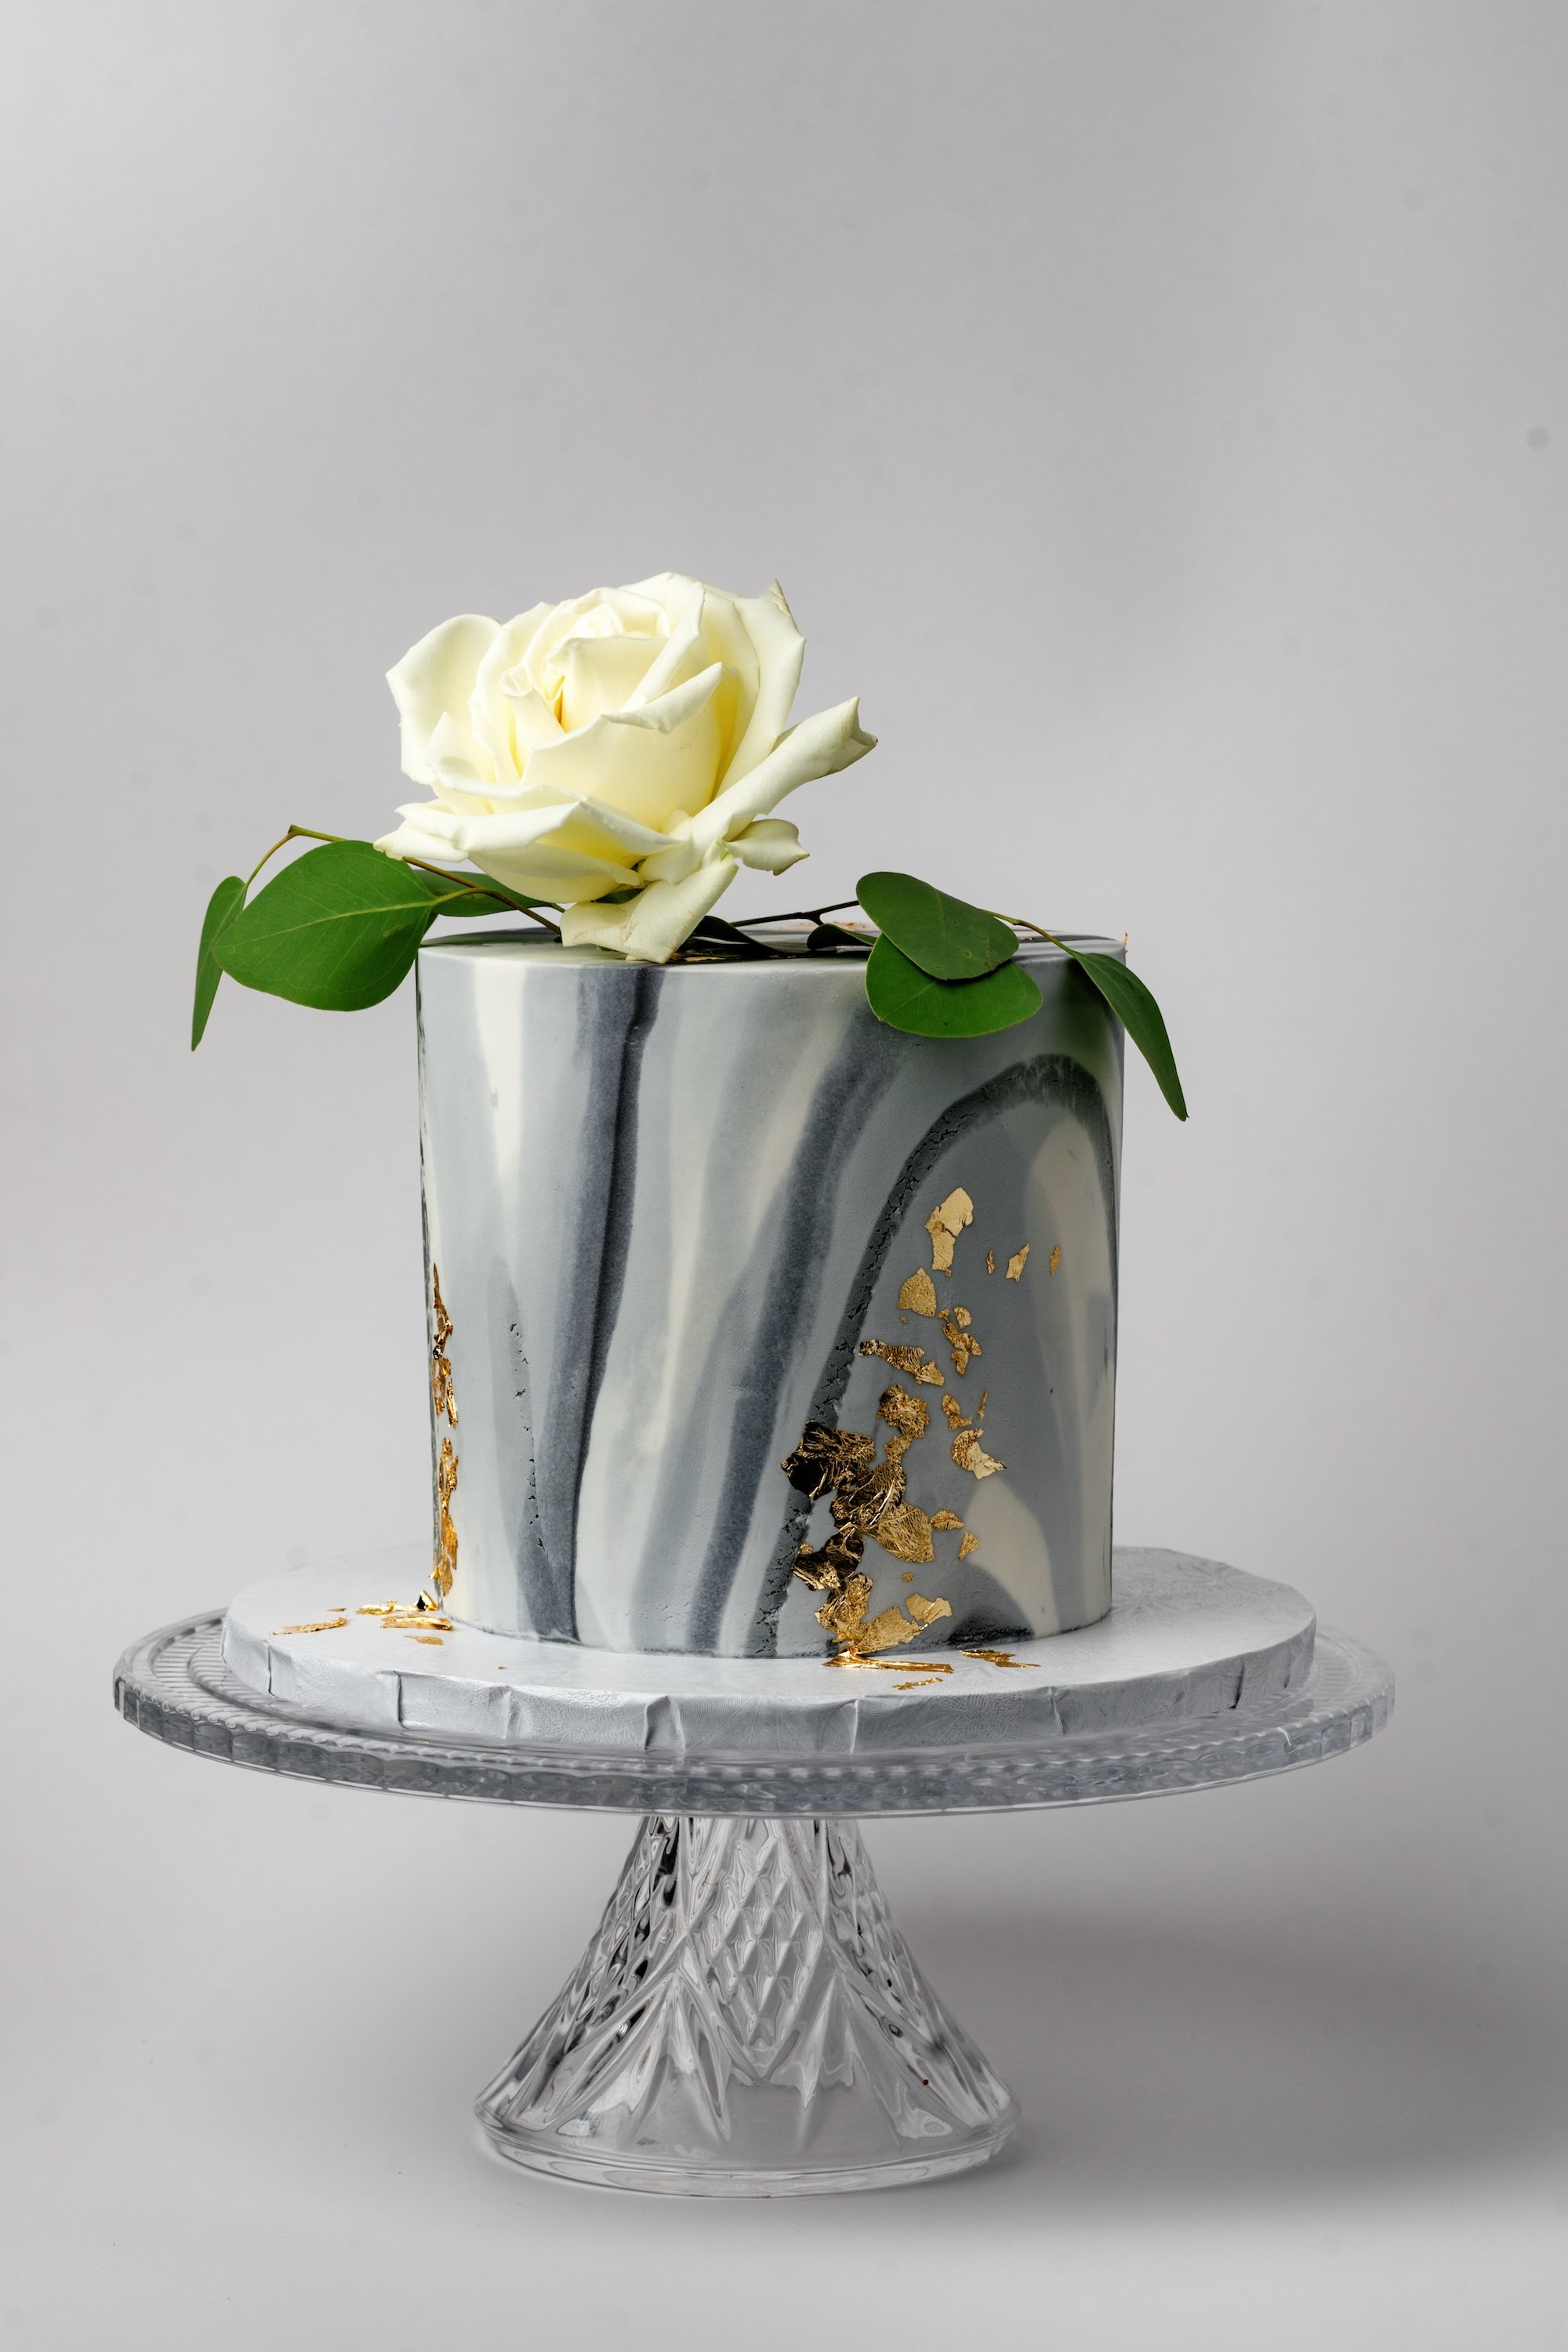 ECBG Cake Studio Custom Chicago Bakery Cakes Marble Bloom 1.jpg